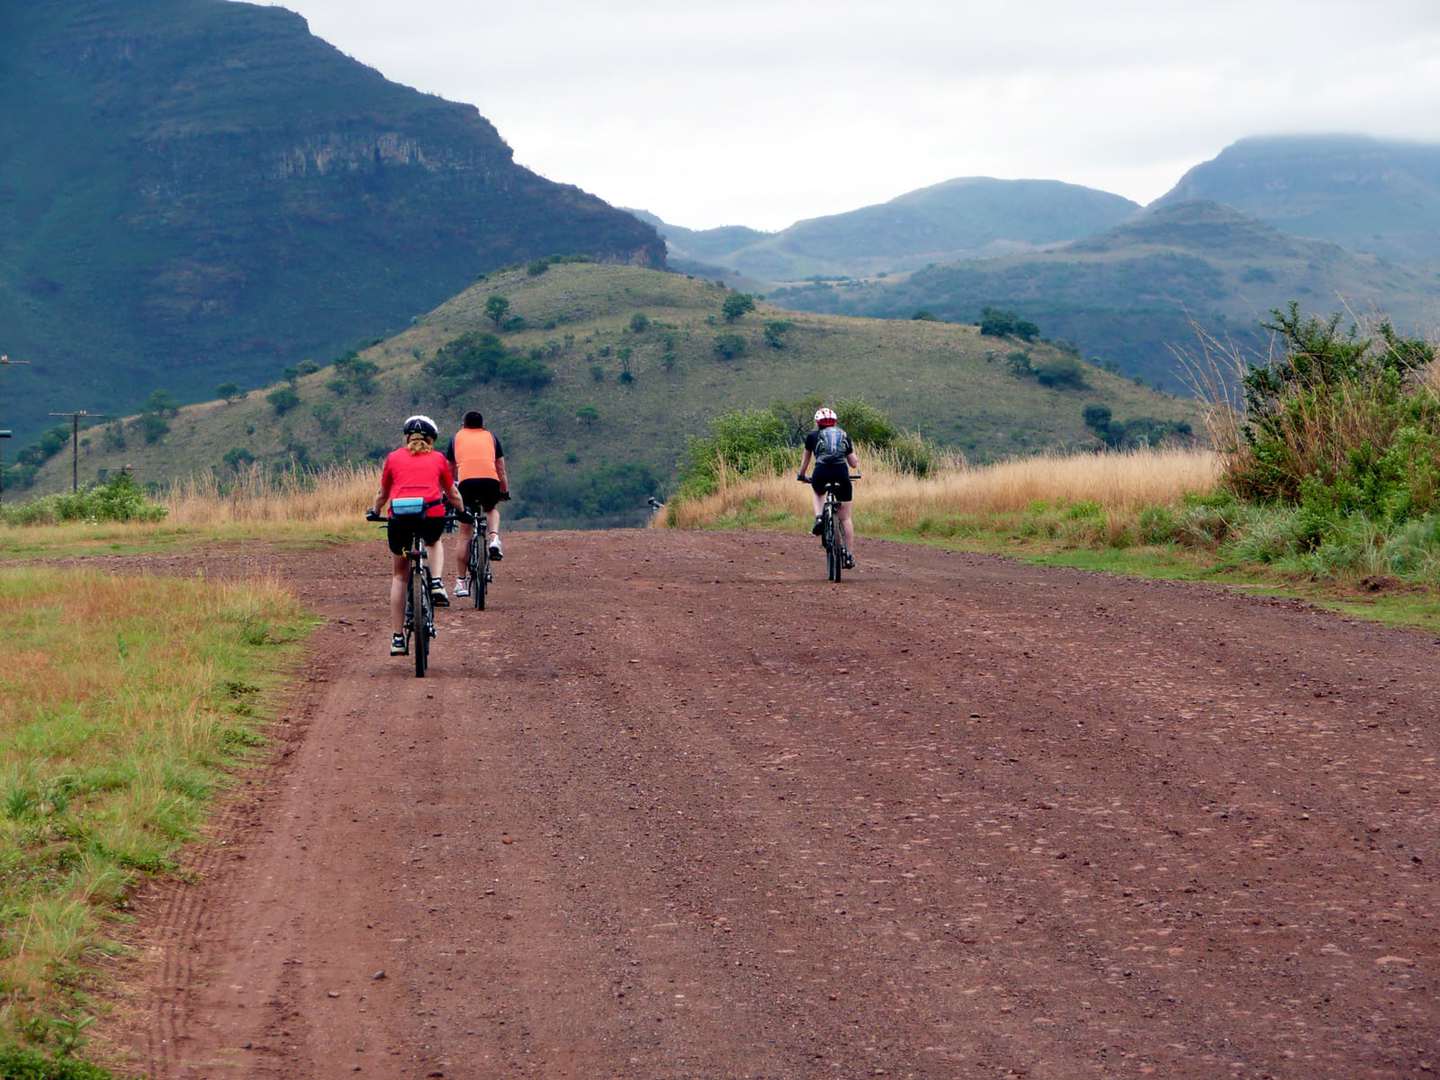 Radreise Südafrika Swasiland - Radler auf unbefestigter Straße umgeben von Hügeln